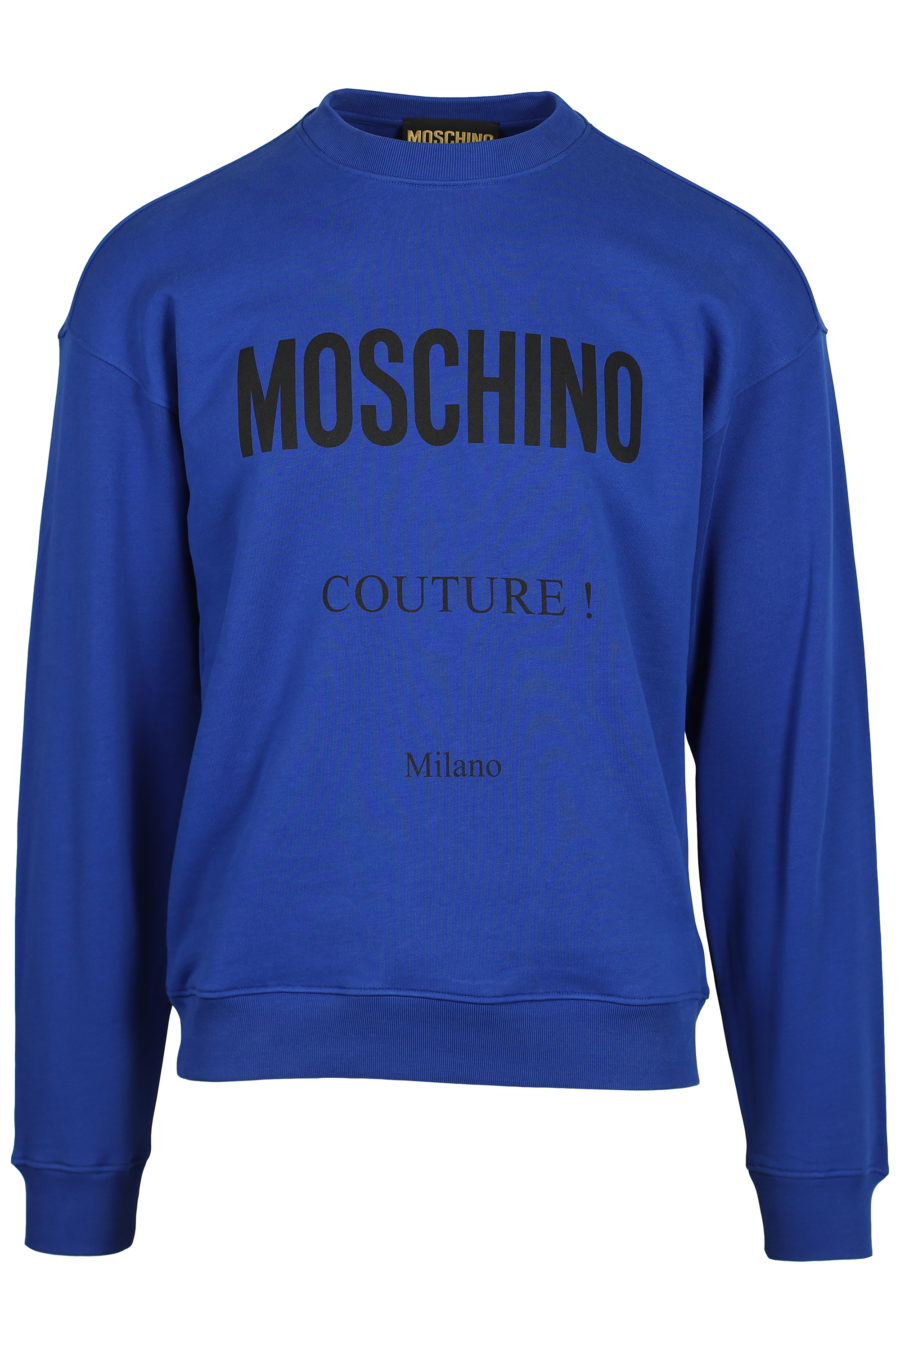 Sudadera azul eléctrico logo "Couture Milano" - IMG 2549